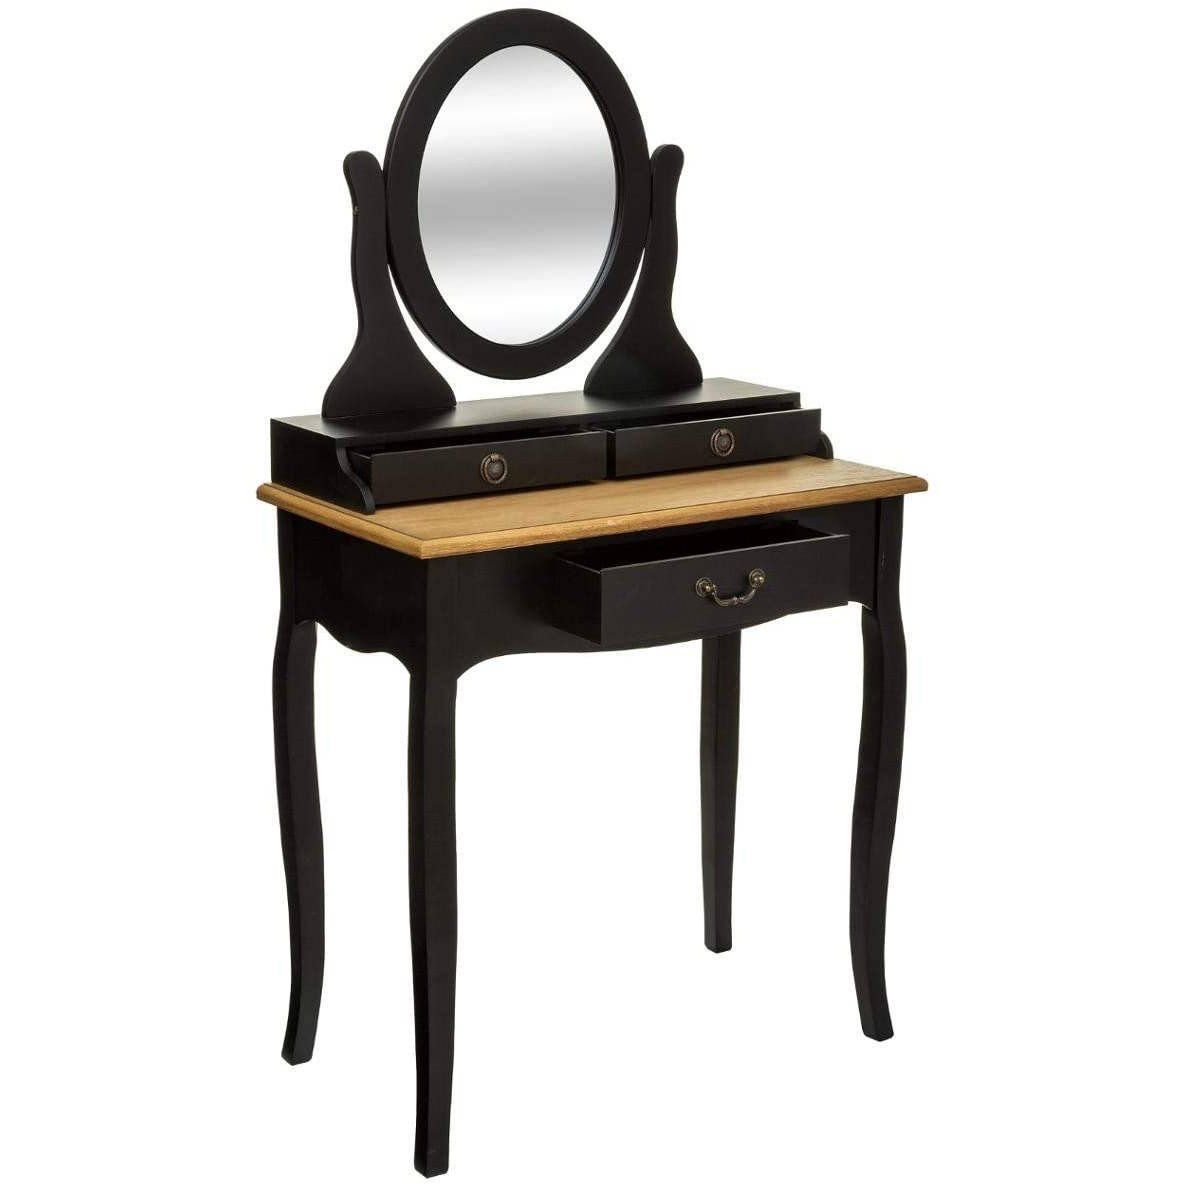 Atmosphera Toaletní stolek CHRYSA se zrcadlem, černý s hnědou deskou - EDAXO.CZ s.r.o.